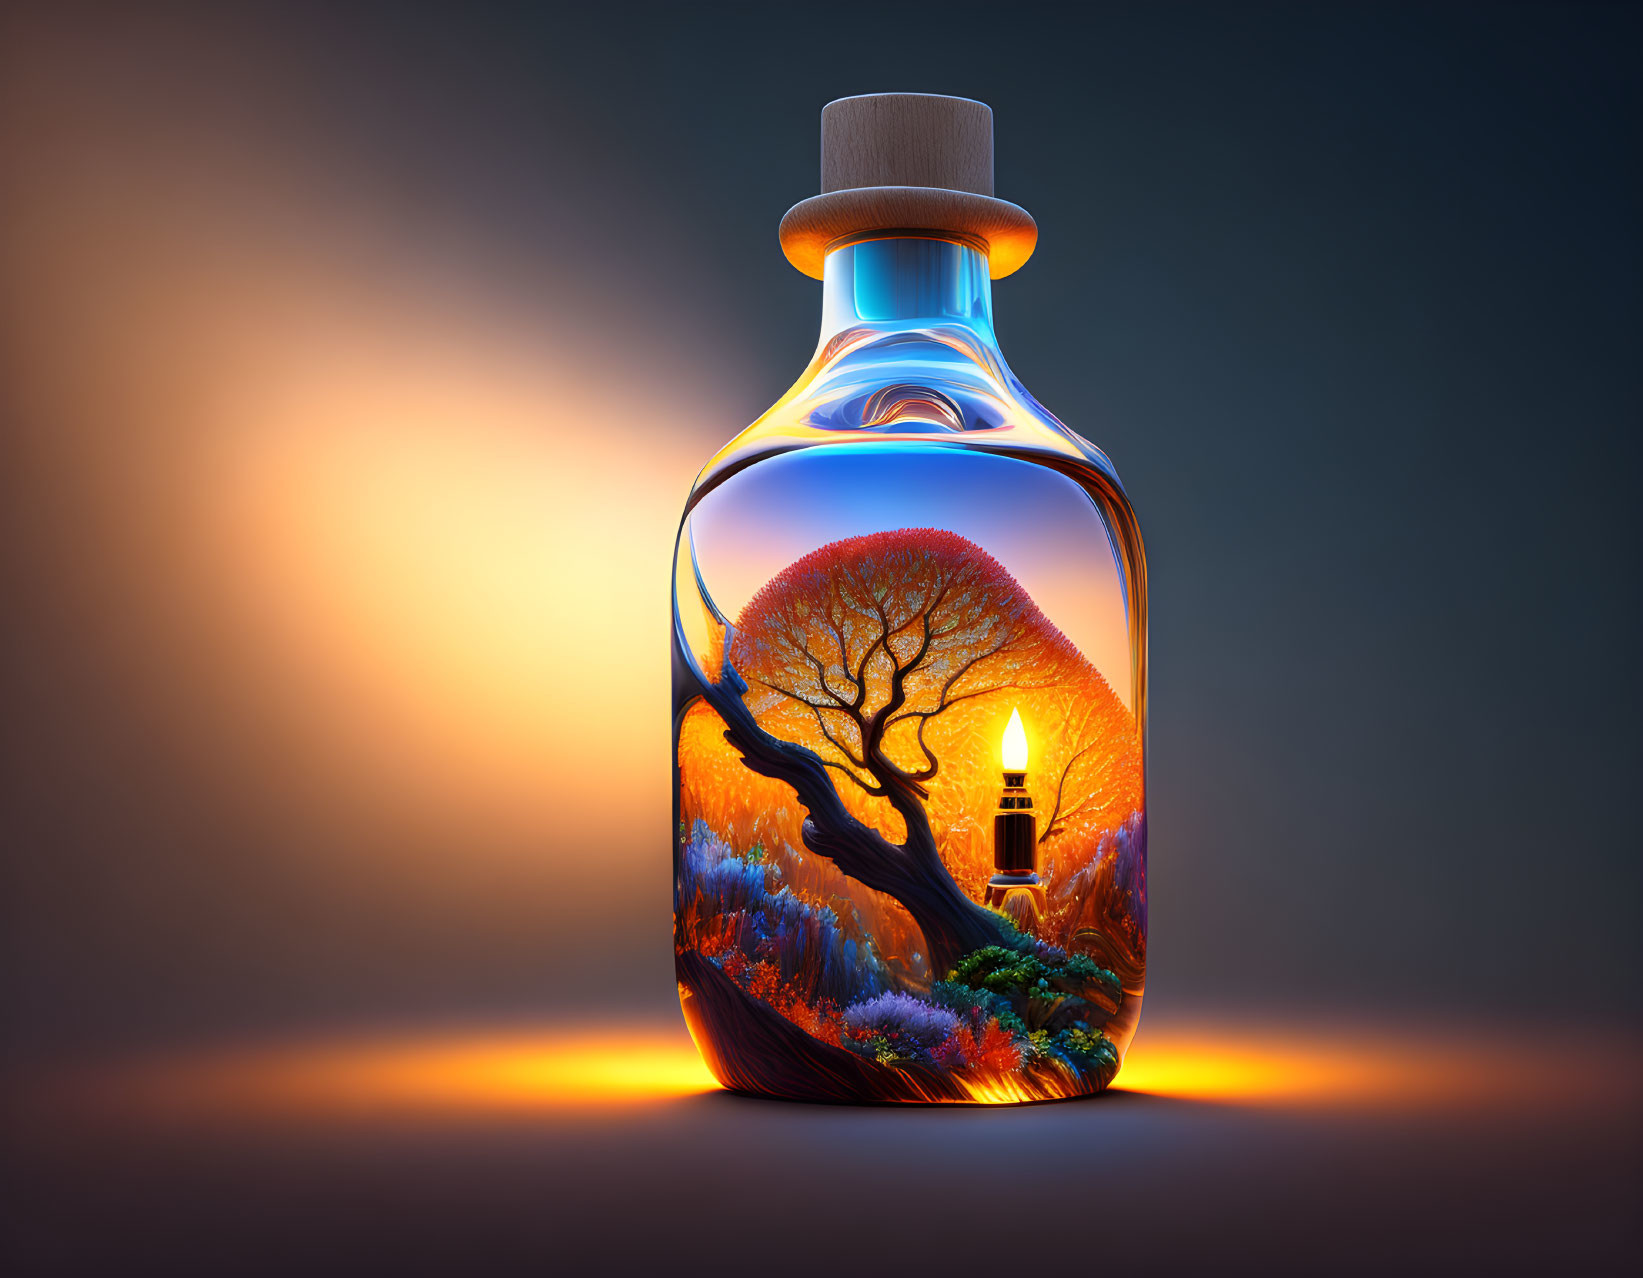 Lighting In A Bottle